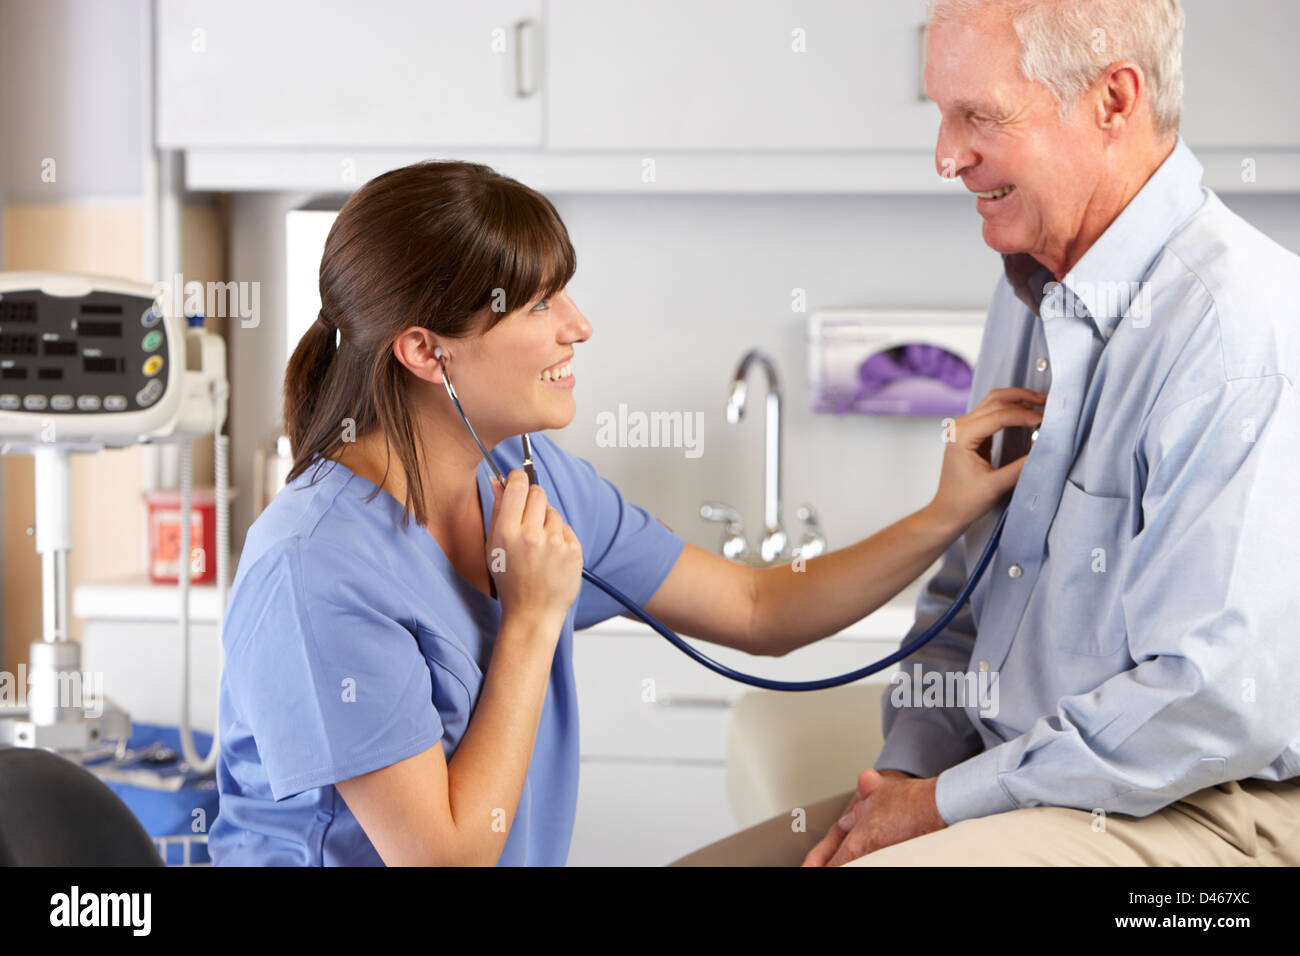 Medico ascoltando la voce maschile il torace del paziente Foto Stock